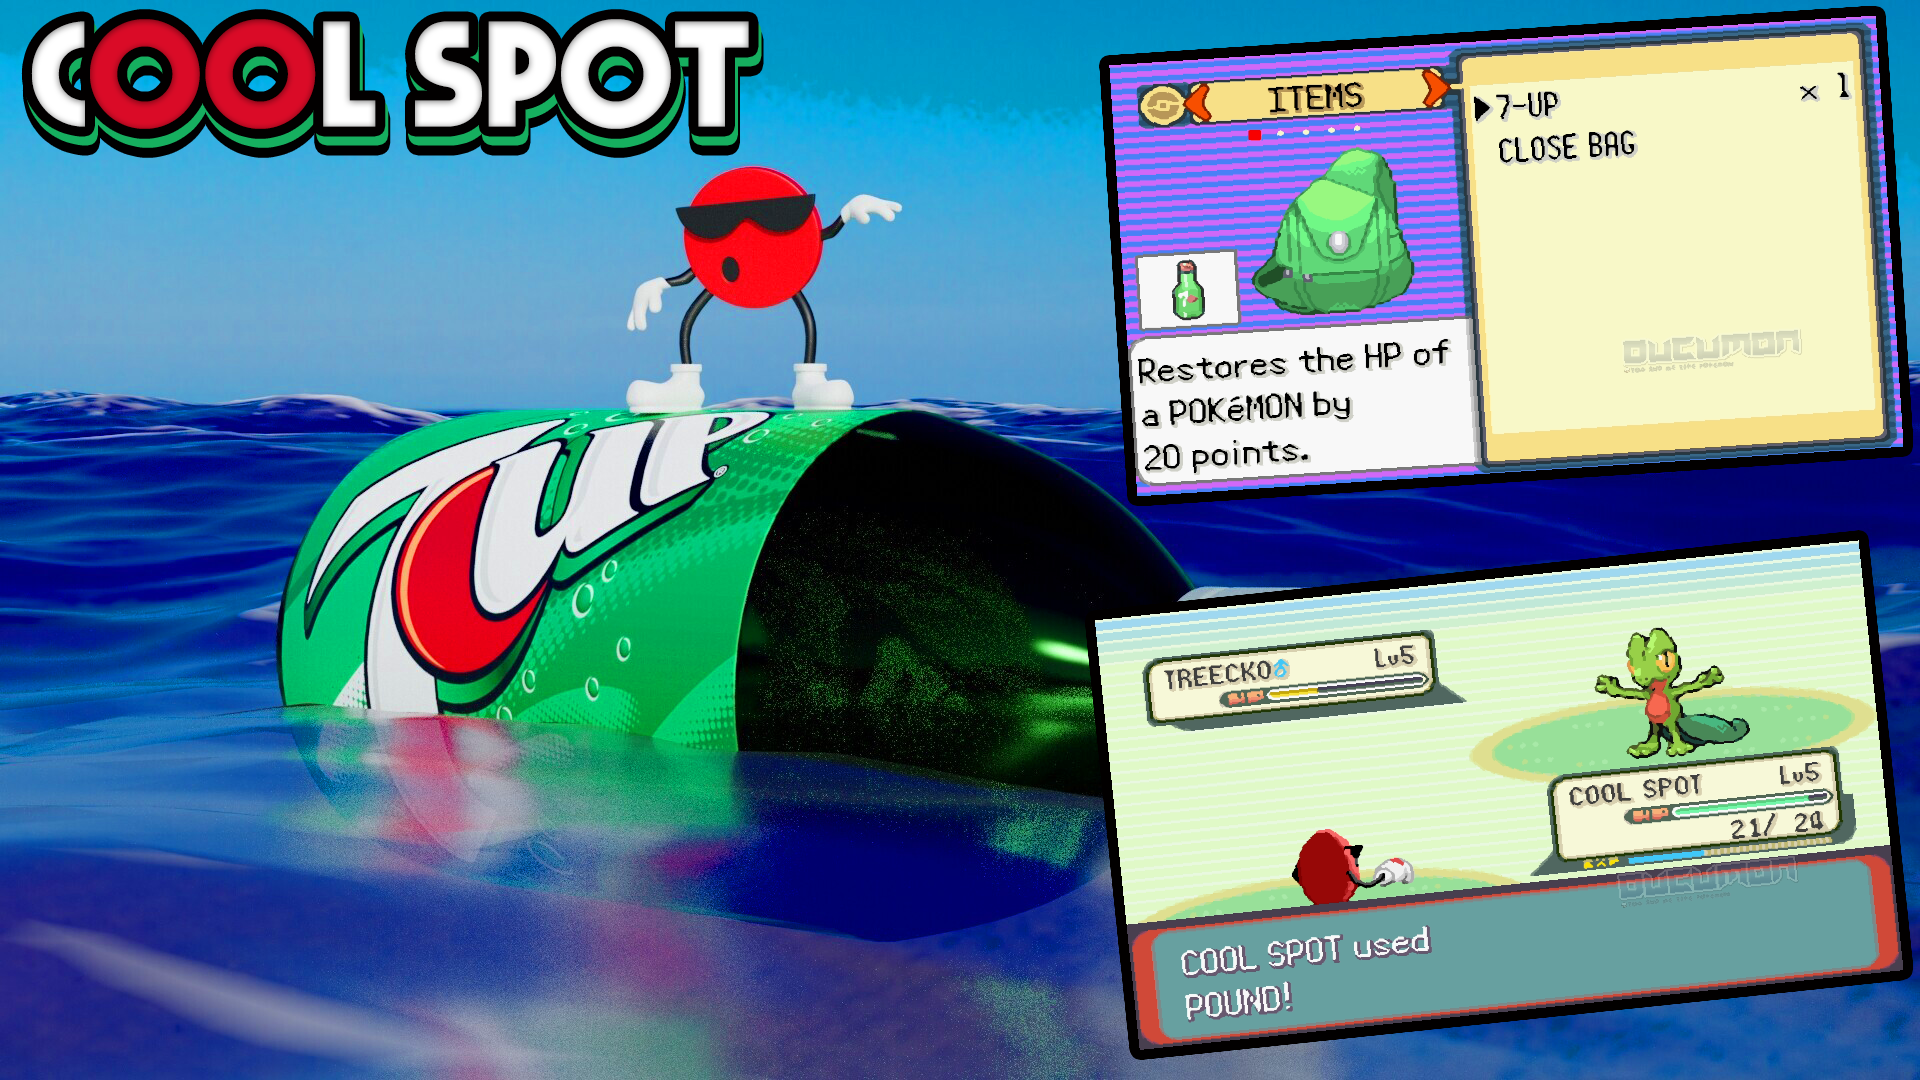 Pokemon Cool Spot - Взлом GBA Pokemon ROM включает Cool Spot, 7-up, новые музыкальные треки в игре